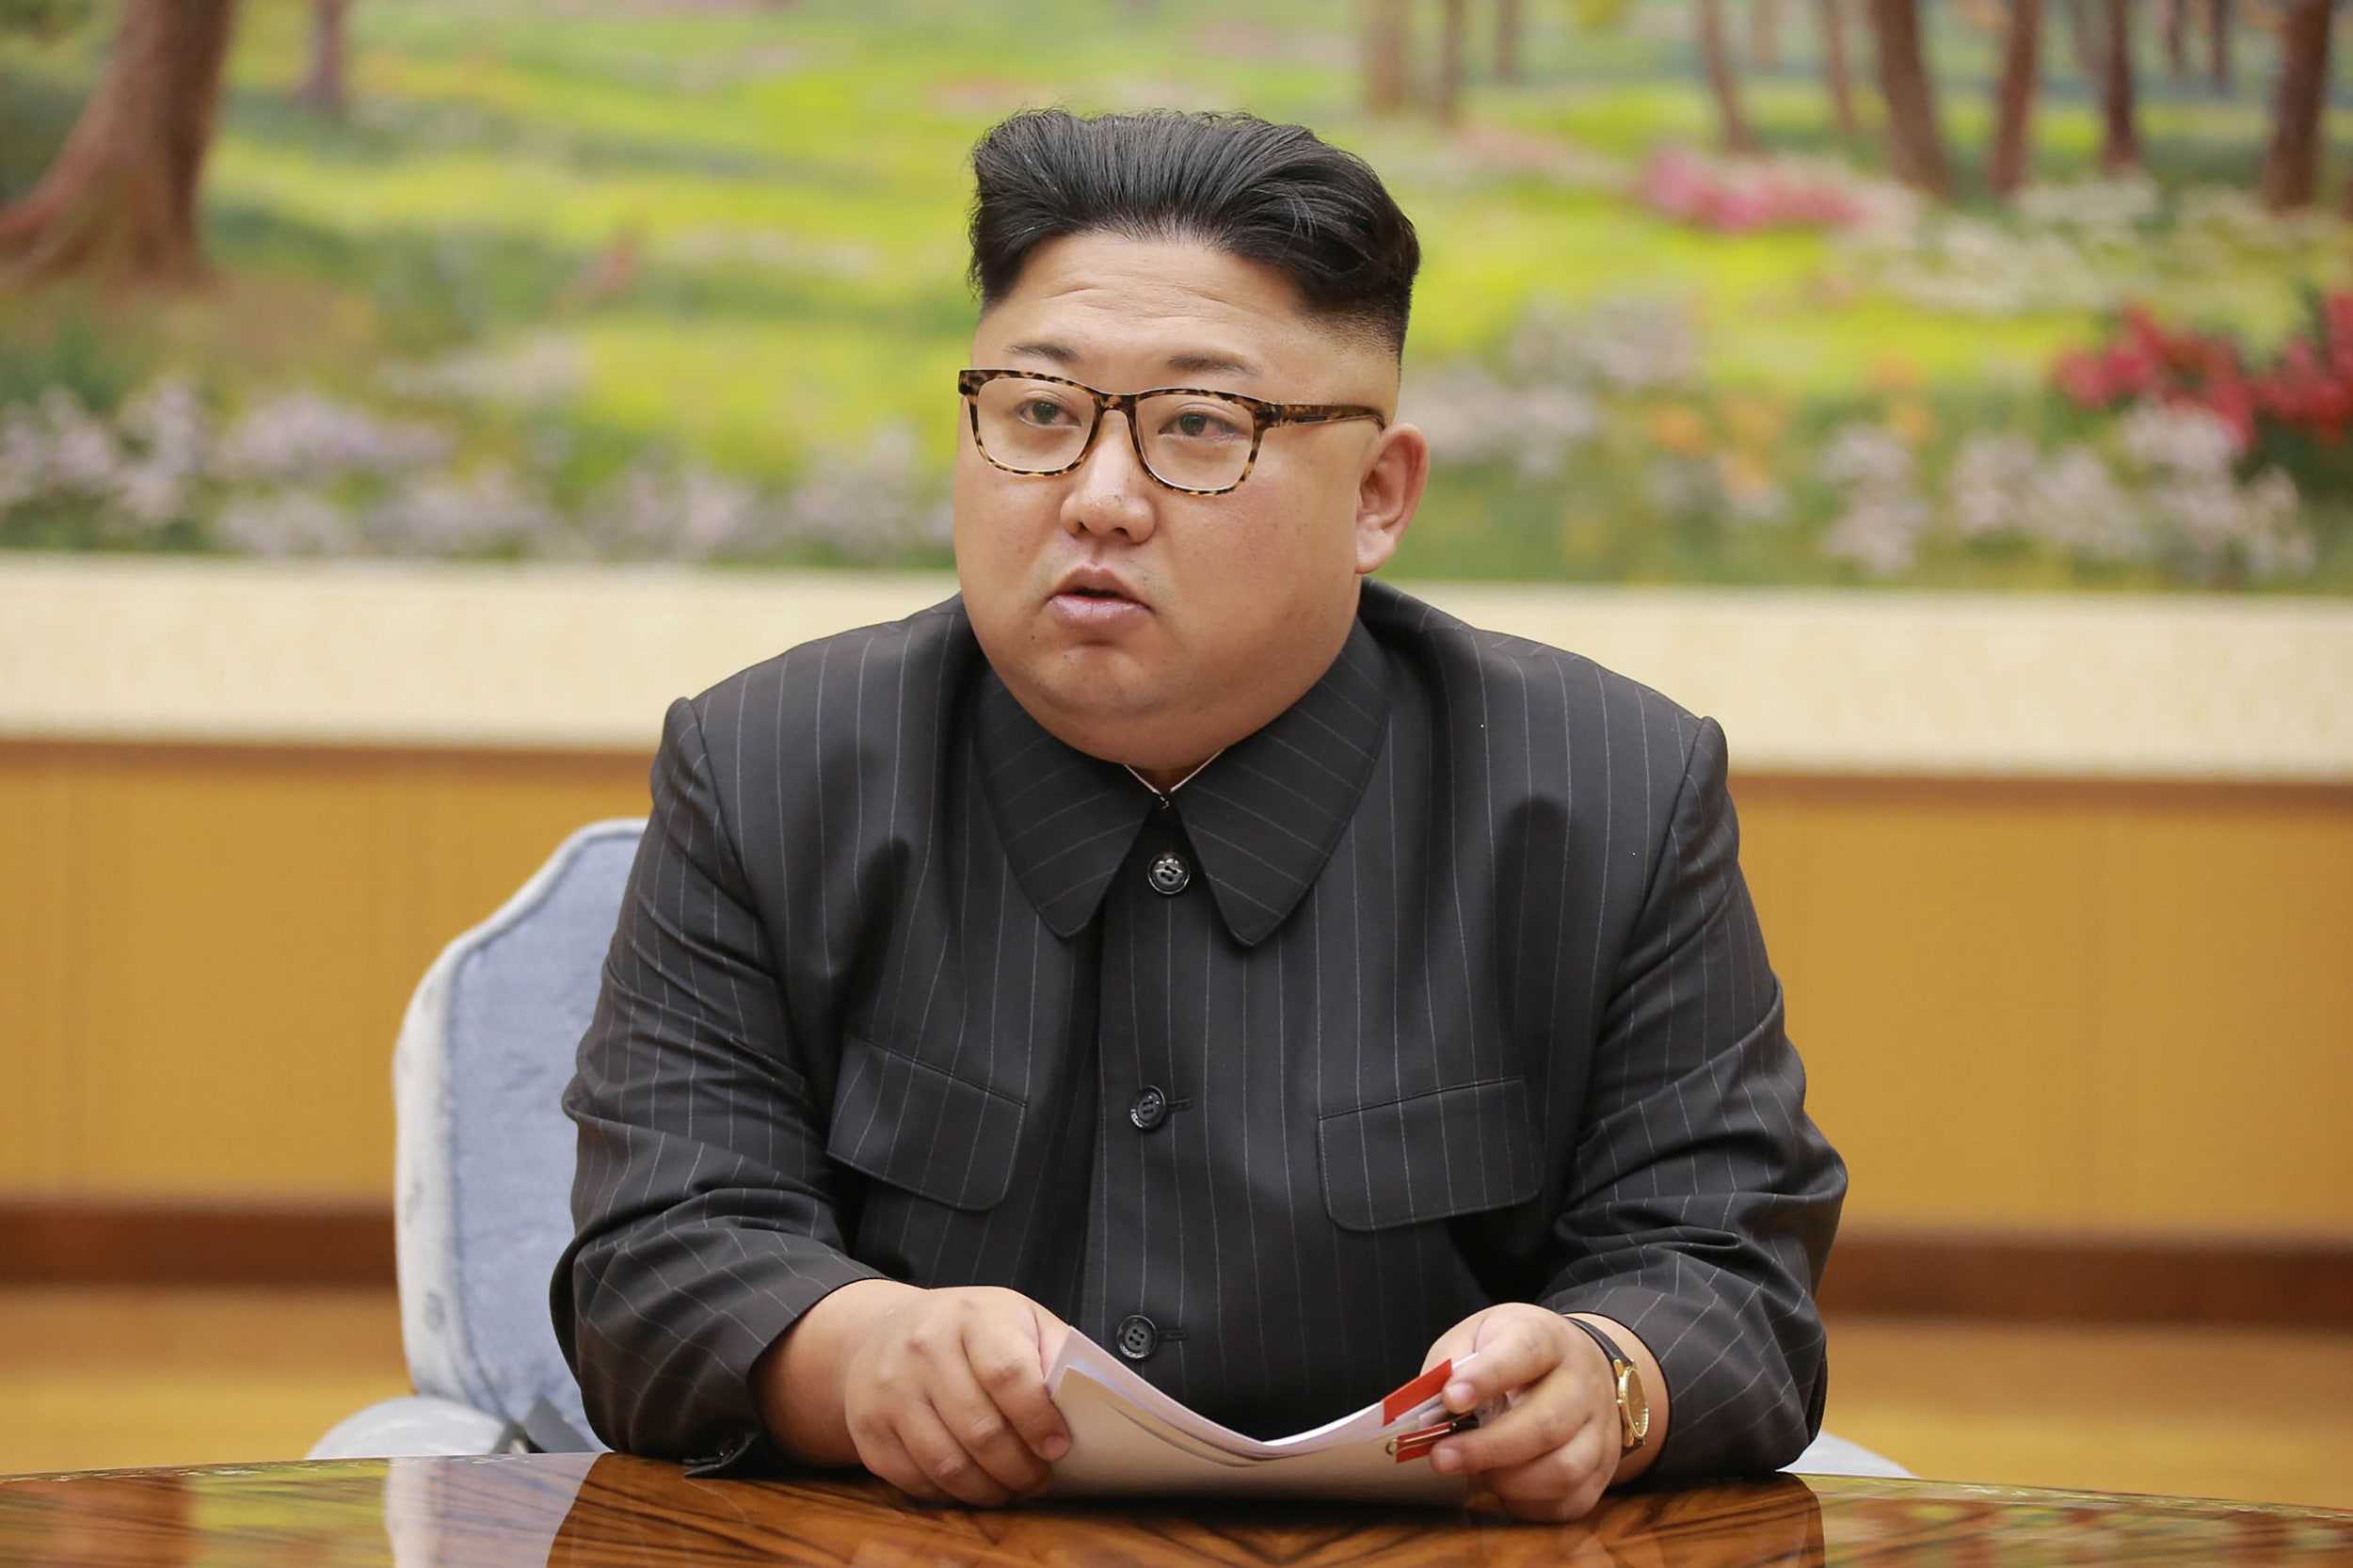 Prohibido jeans ajustados Corea del Norte - ACN